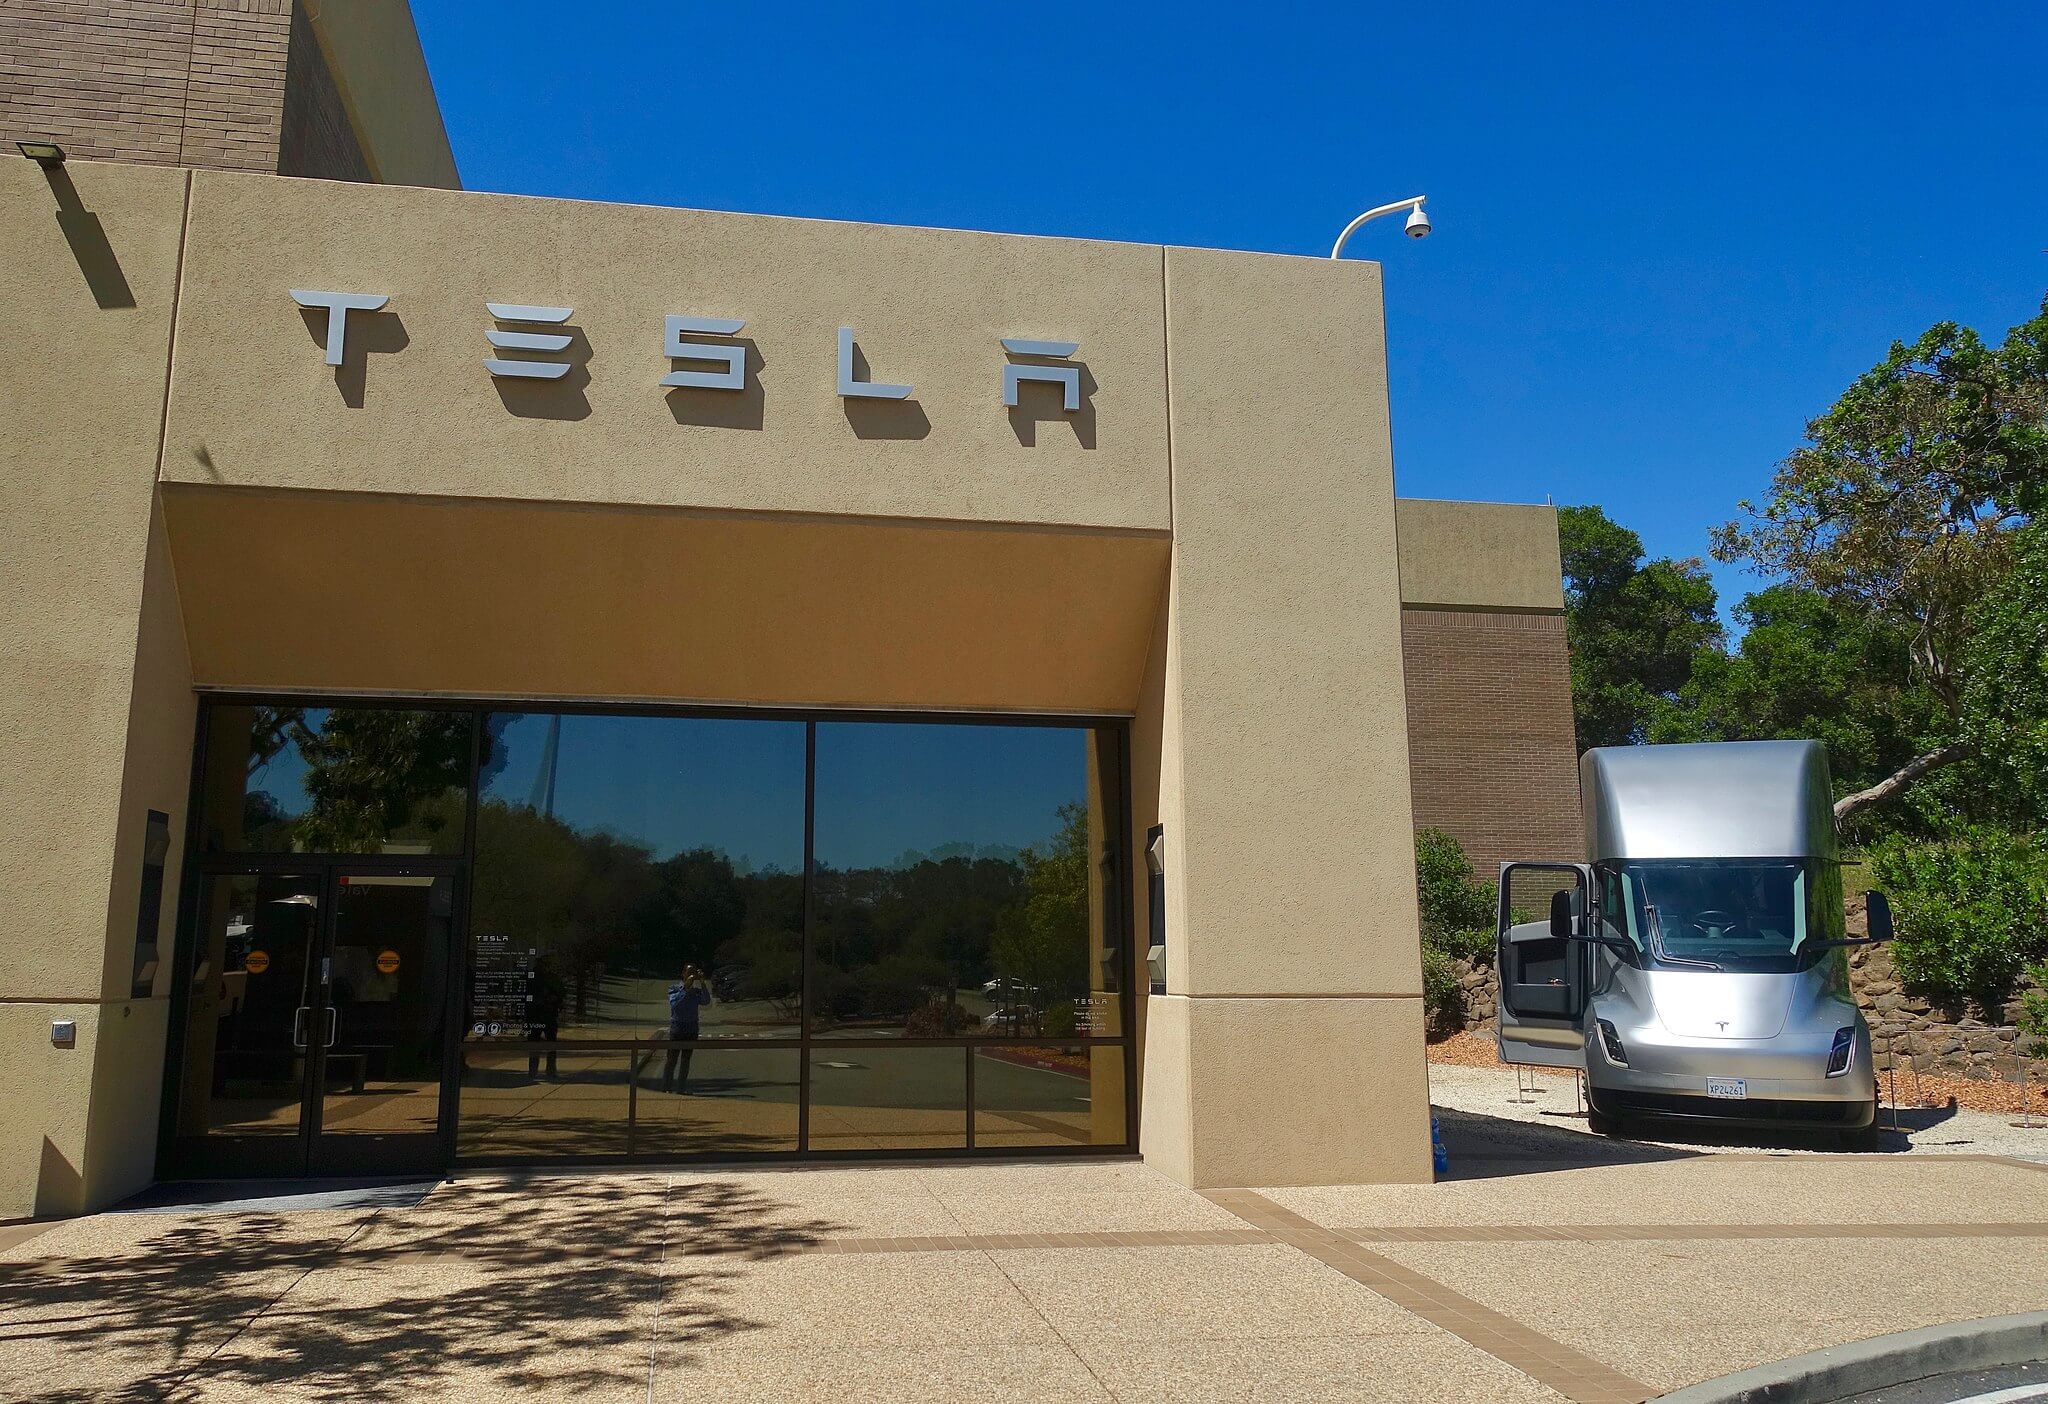 La variante della gamma Tesla Semi 500 inizia la spedizione quest’anno: Elon Musk